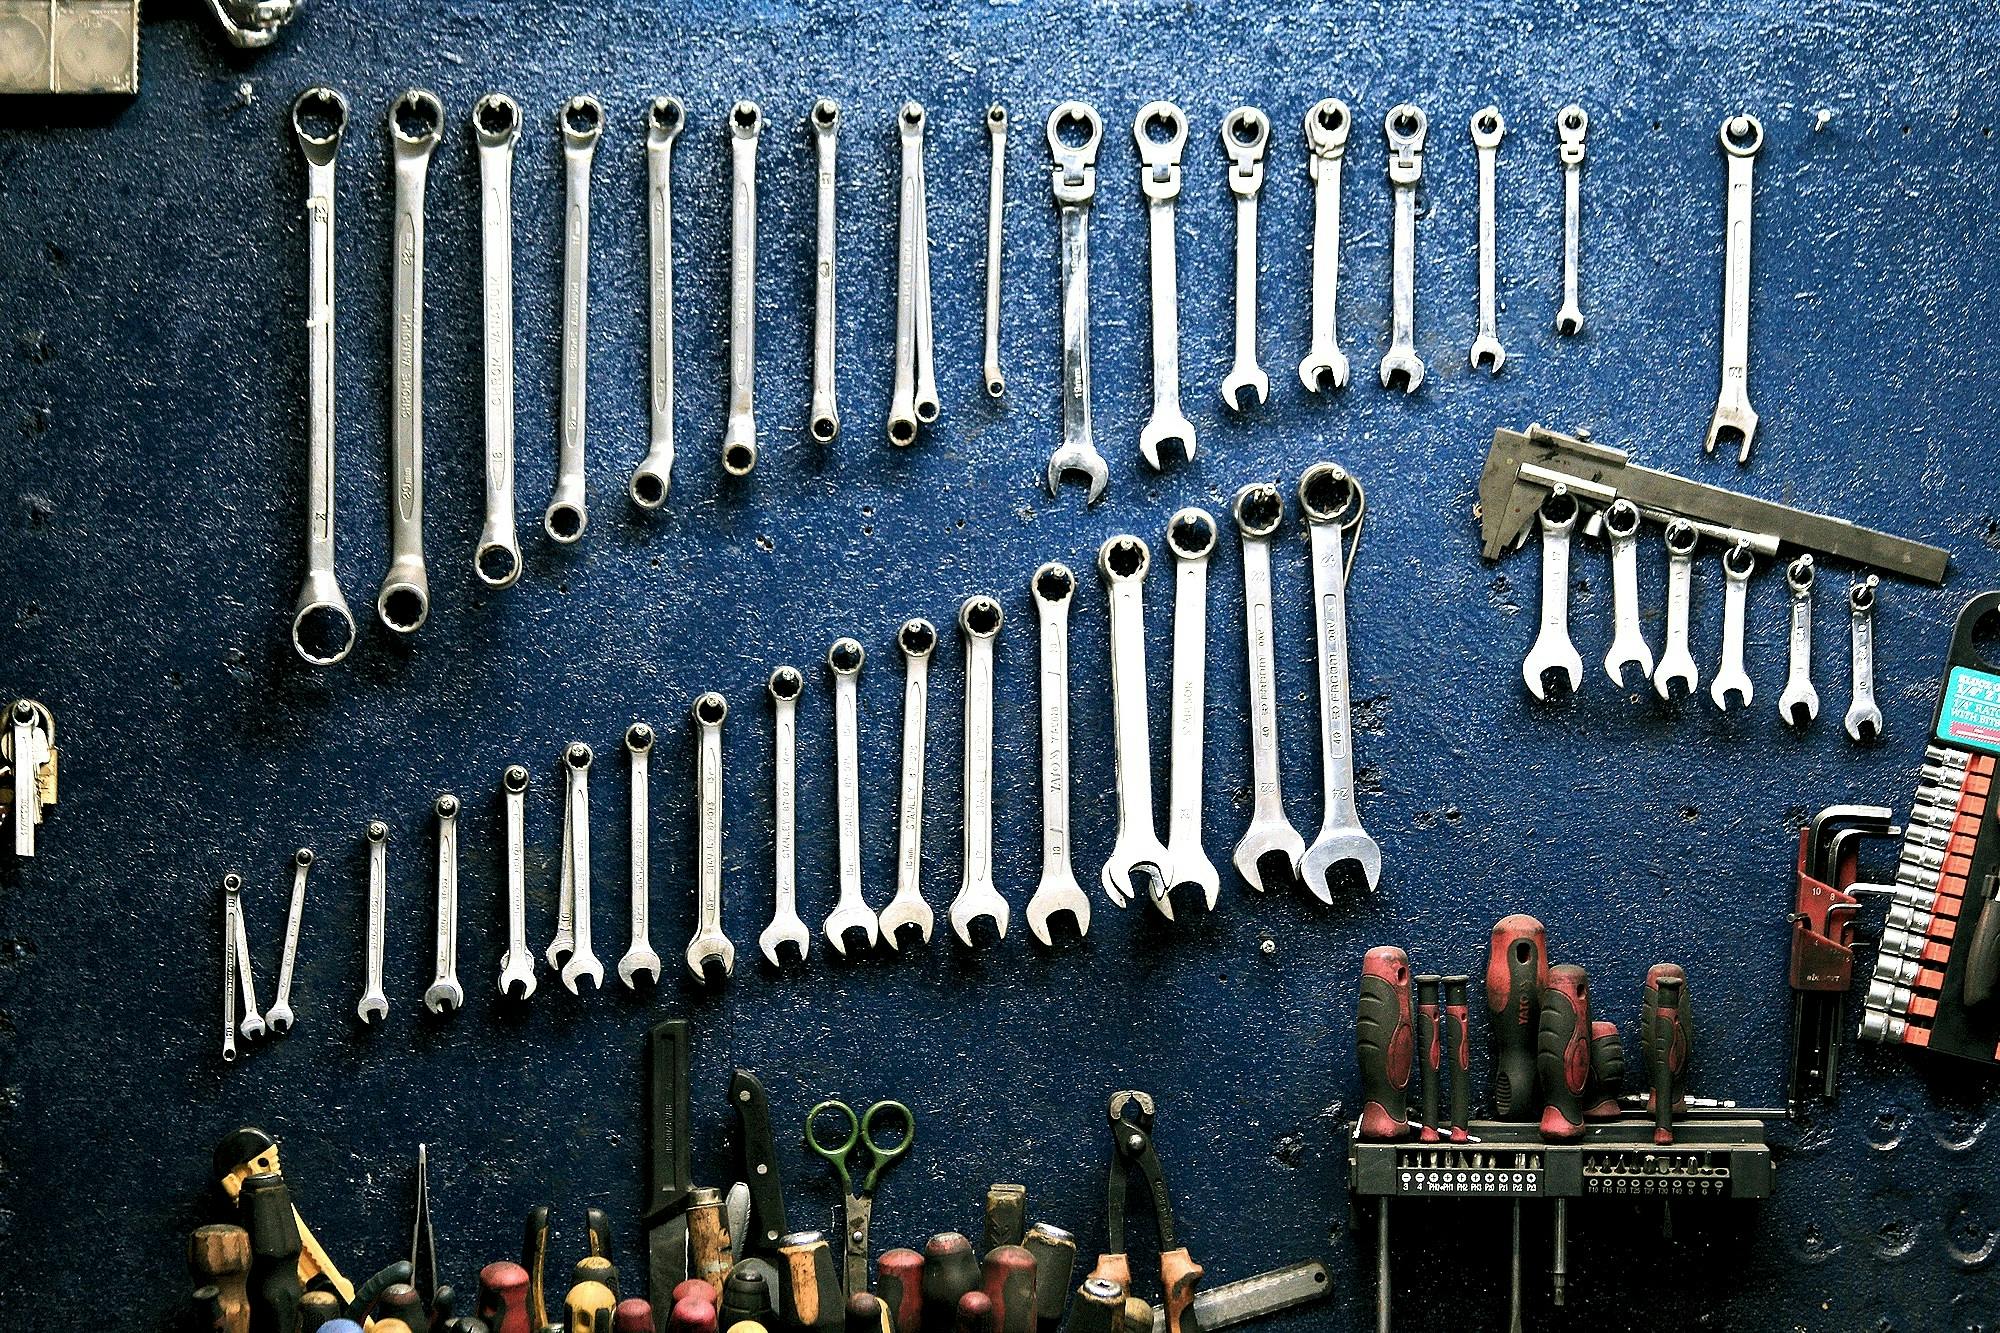 الأدوات والأشغال اليدوية